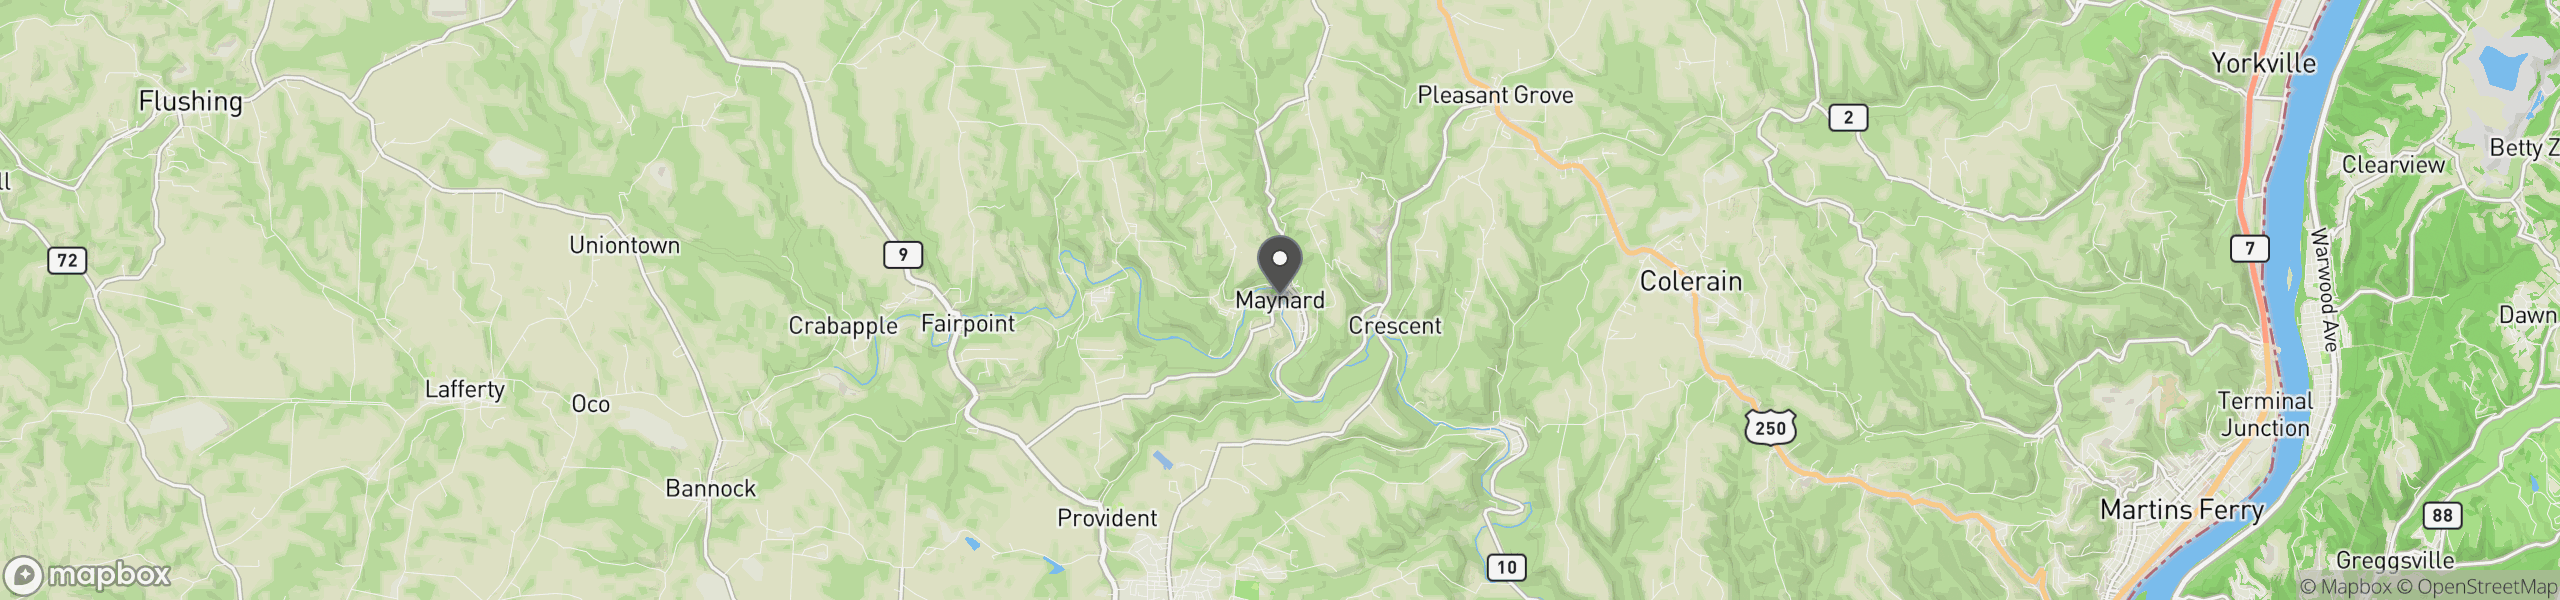 Maynard, OH